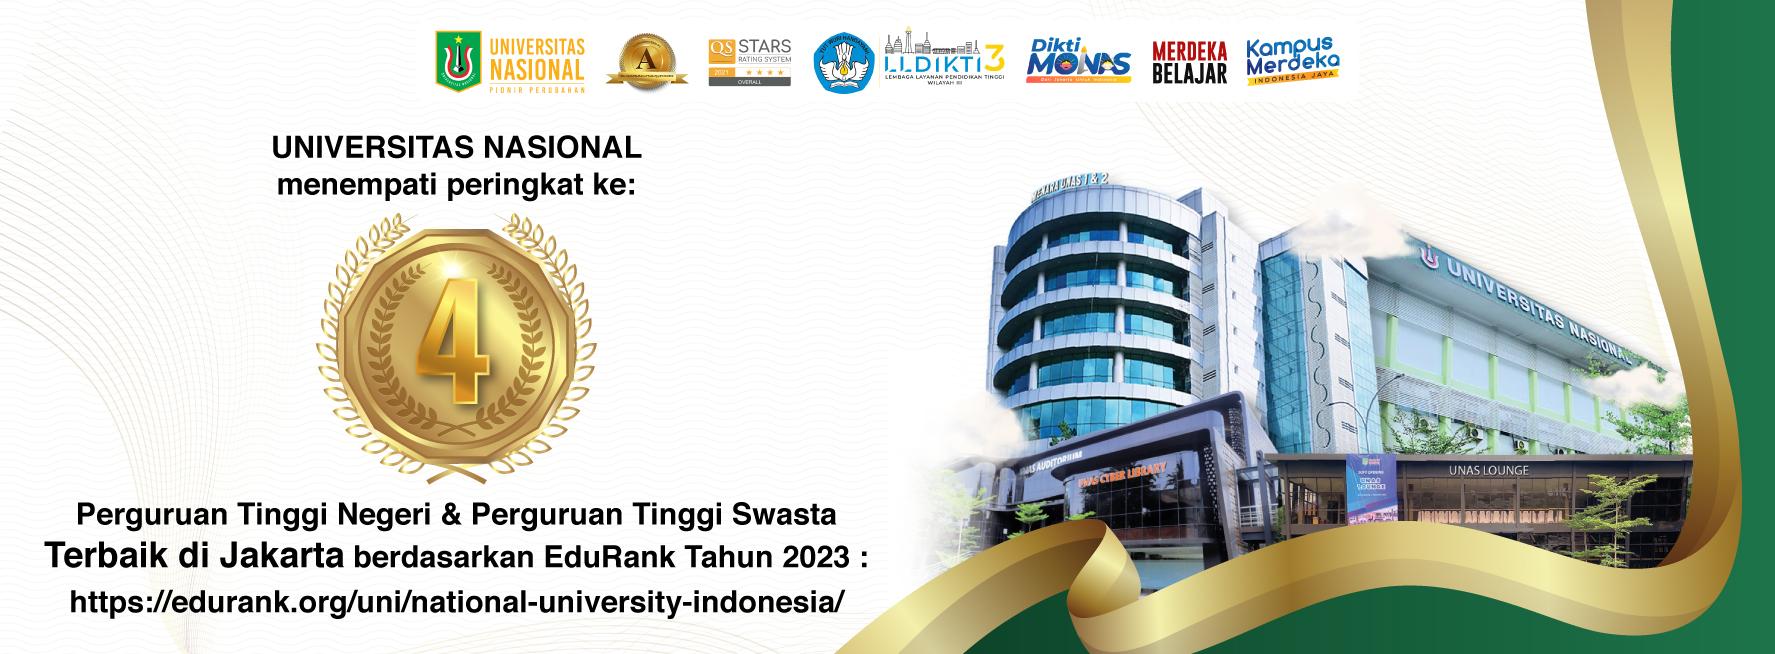 Universitas Nasional Peringkat Ke-4 Perguruan Tinggi Negeri Dan Perguruan Tinggi Swasta Terbaik Se-DKI Jakarta Tahun 2023